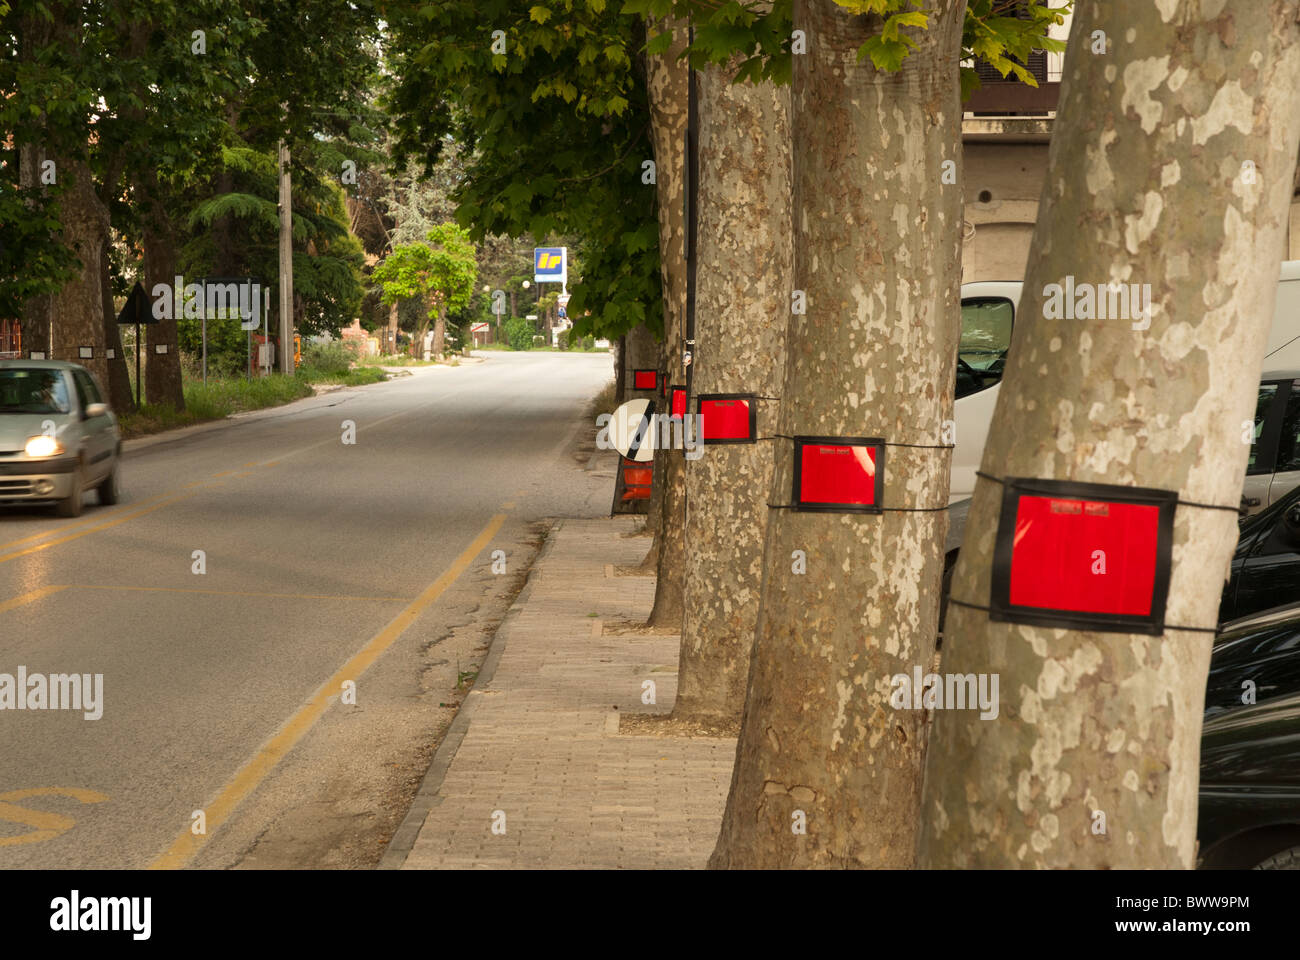 Verkehr-Reflektoren auf Bäume am Straßenrand - rot Stockfotografie - Alamy